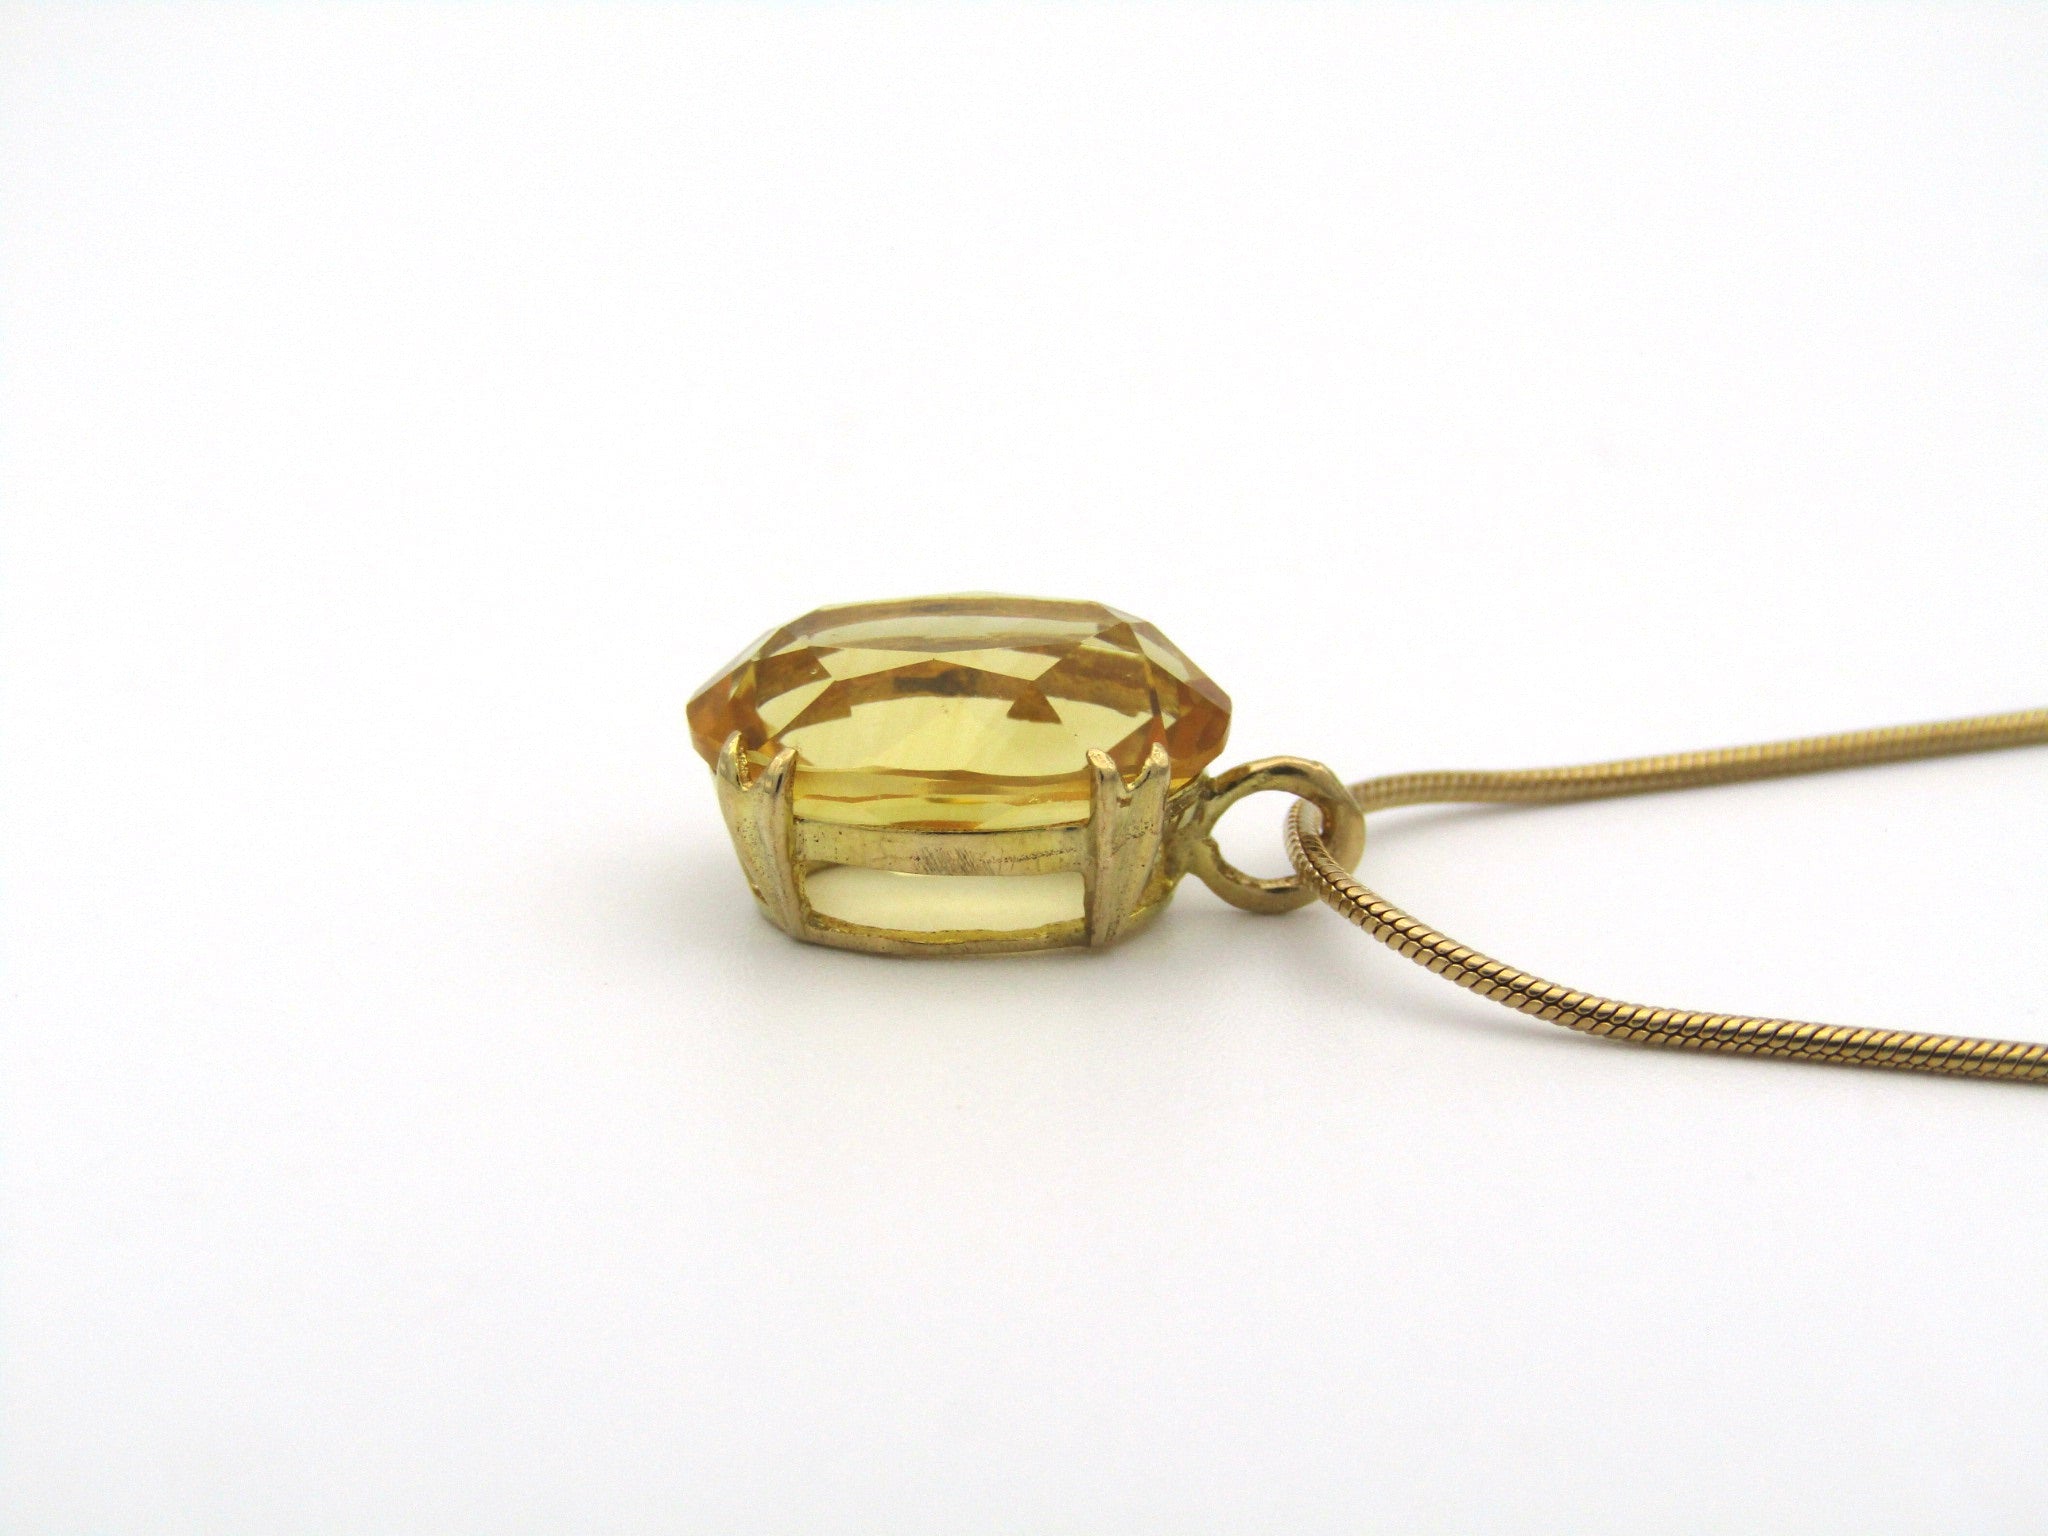 9K gold citrine pendant.